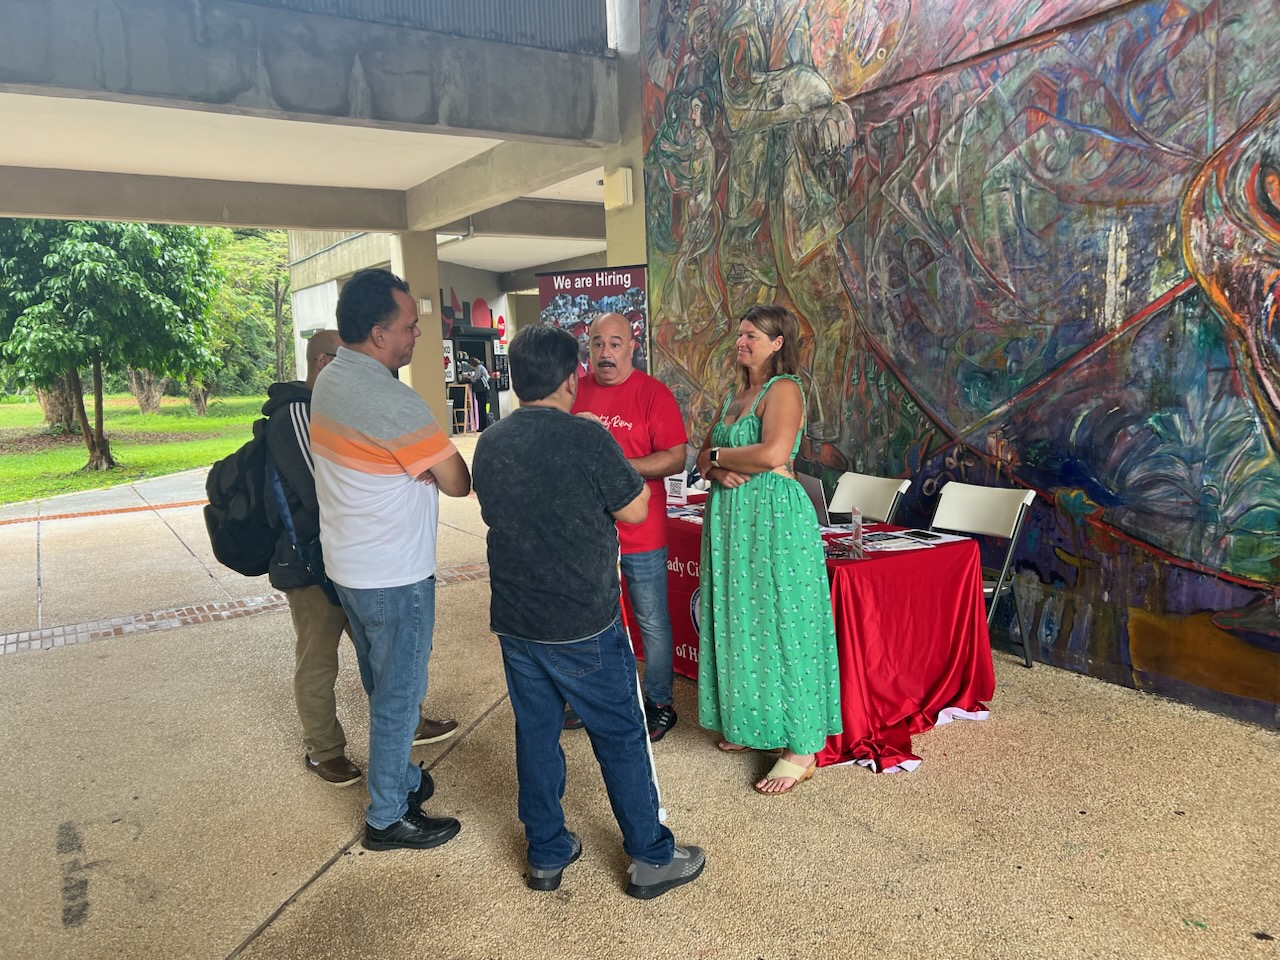 Recruitment Event in Puerto Rico